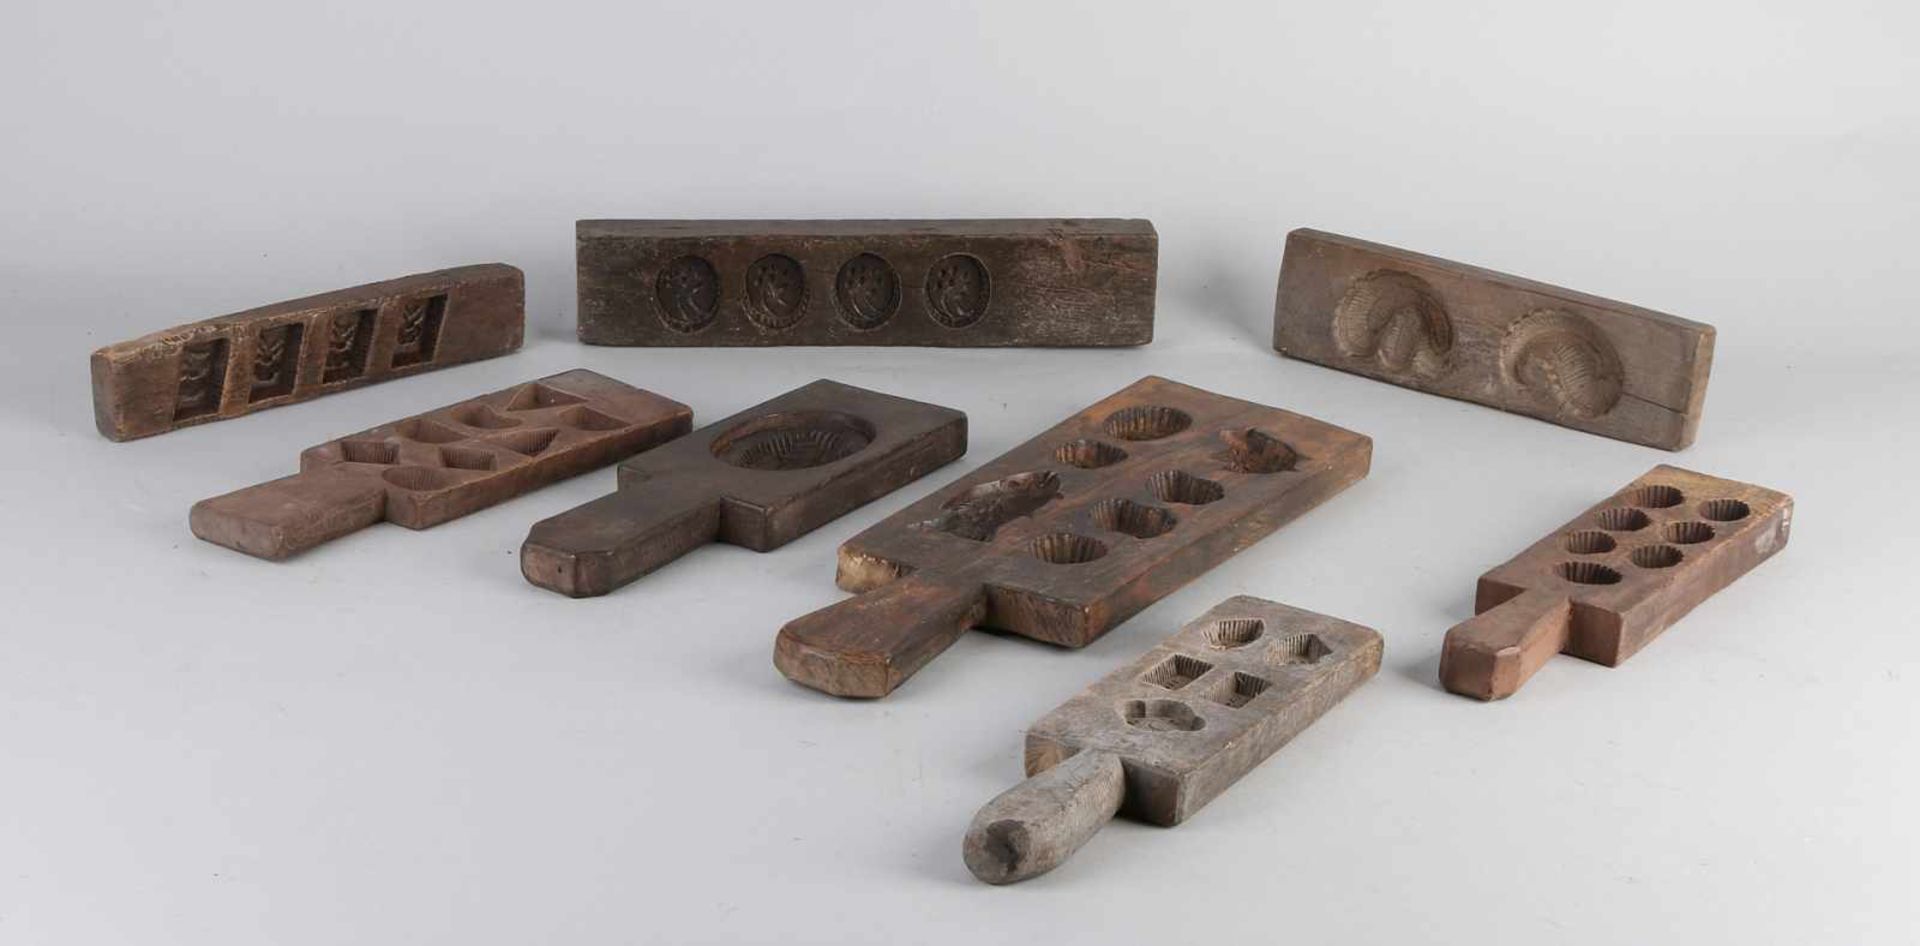 Acht Stücke Holzkekse / Lebkuchenformen aus dem 19. Jahrhundert. Vielfältig. Größe: 27 - 40 cm. In